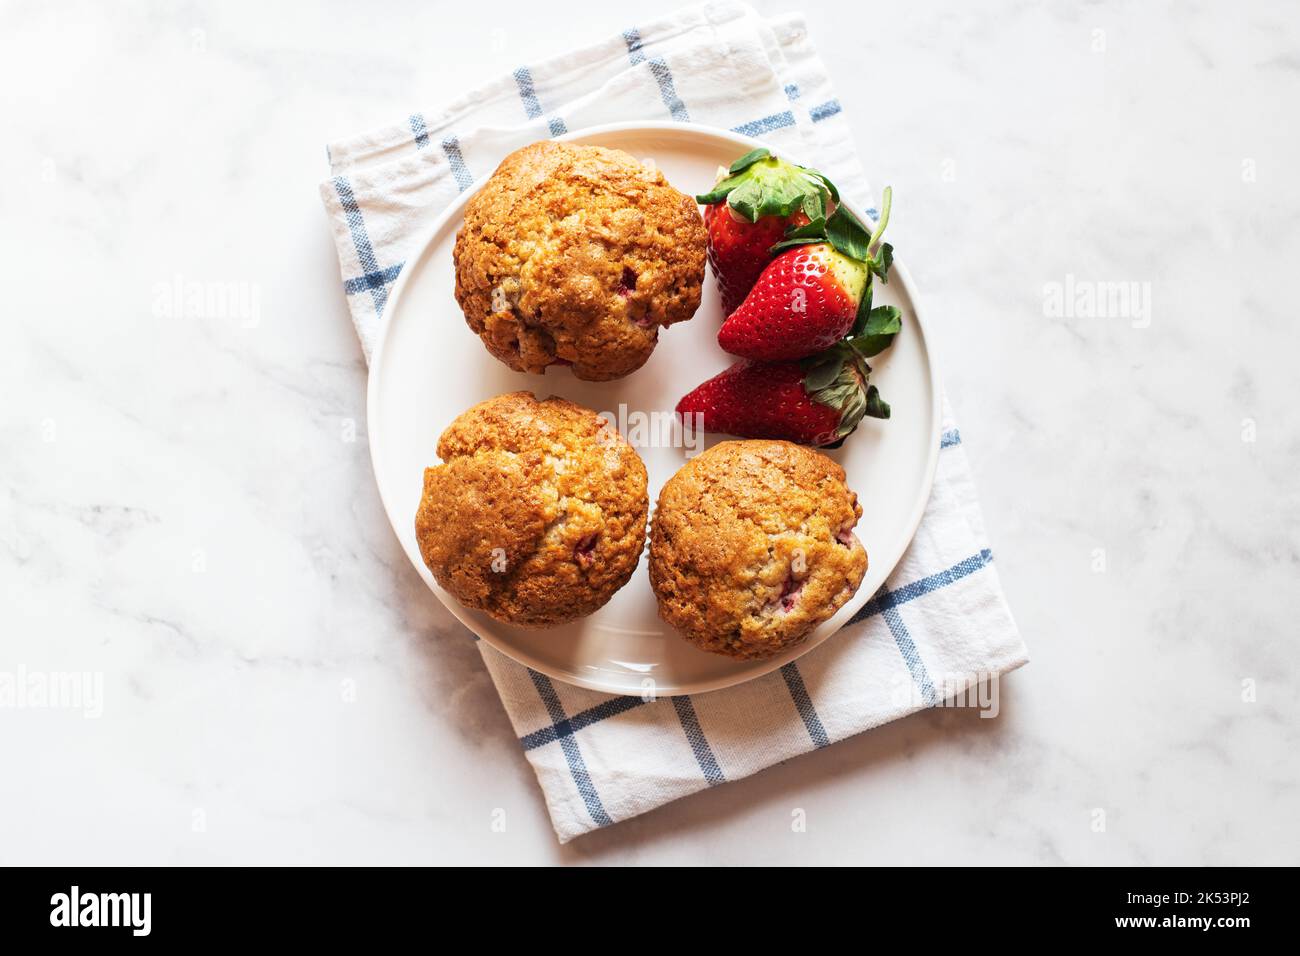 Muffins aux fraises servis dans une assiette sur fond de marbre. Vue de dessus. Banque D'Images